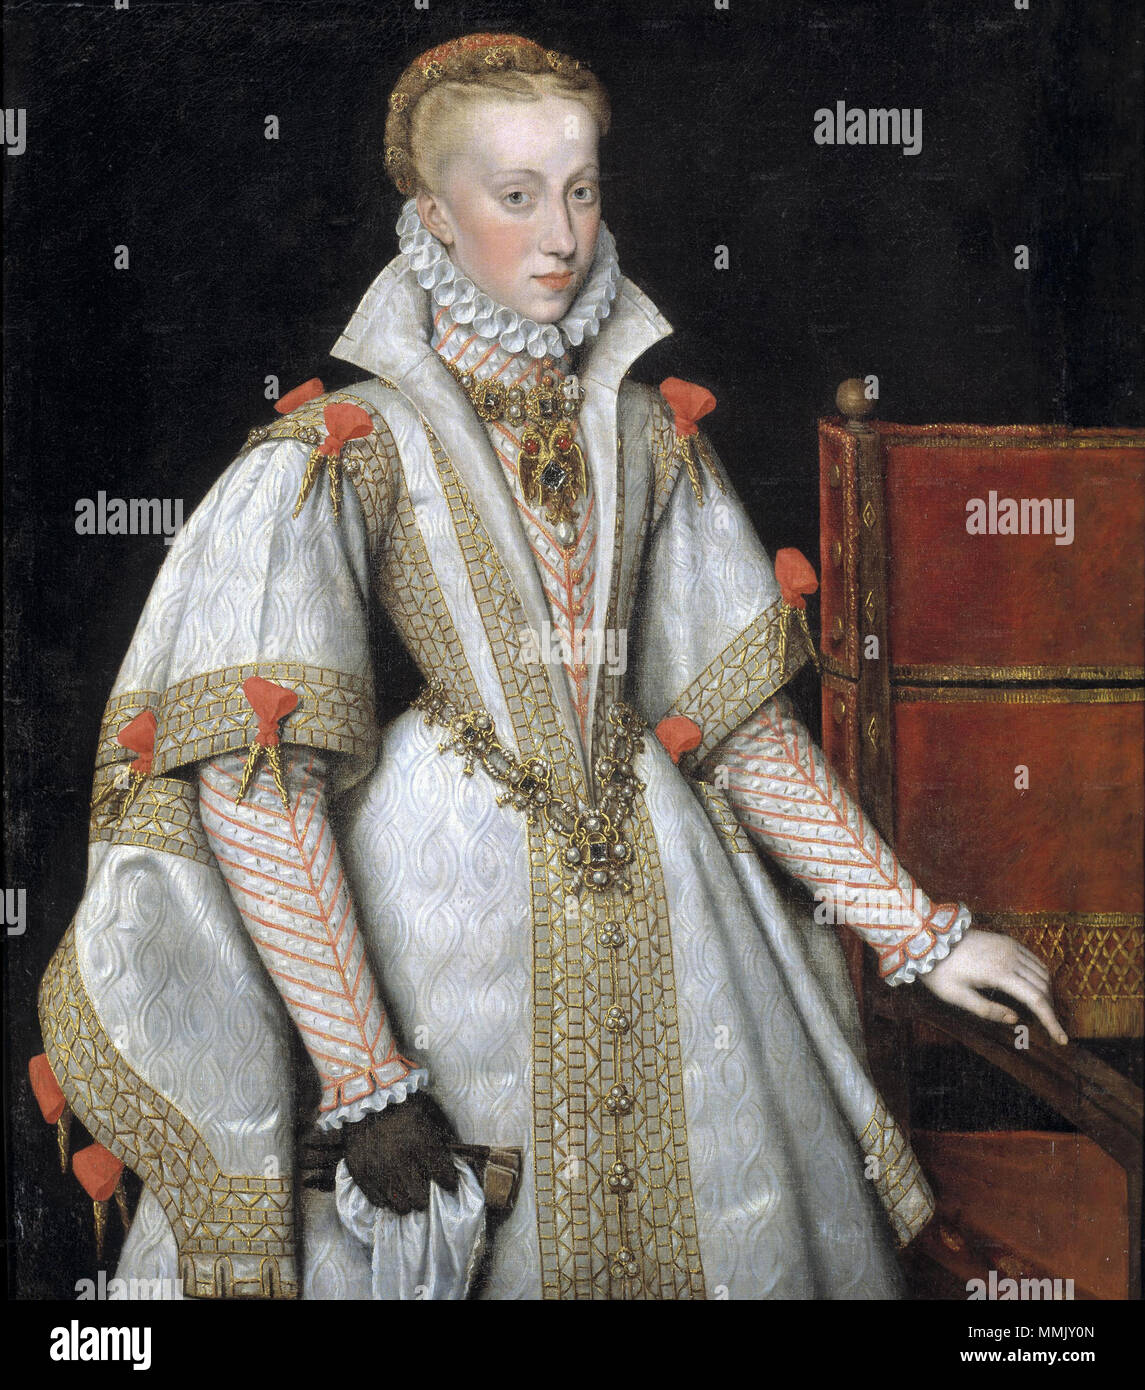 Englisch: Ein Gericht Portrait von Königin Anna von Österreich, die Tochter  von Kaiser Maximiliano II (1527-1576), vierte Frau von Felipe II  (1556-1598) und Mutter von der Zukunft Felipe III Español: Retrato